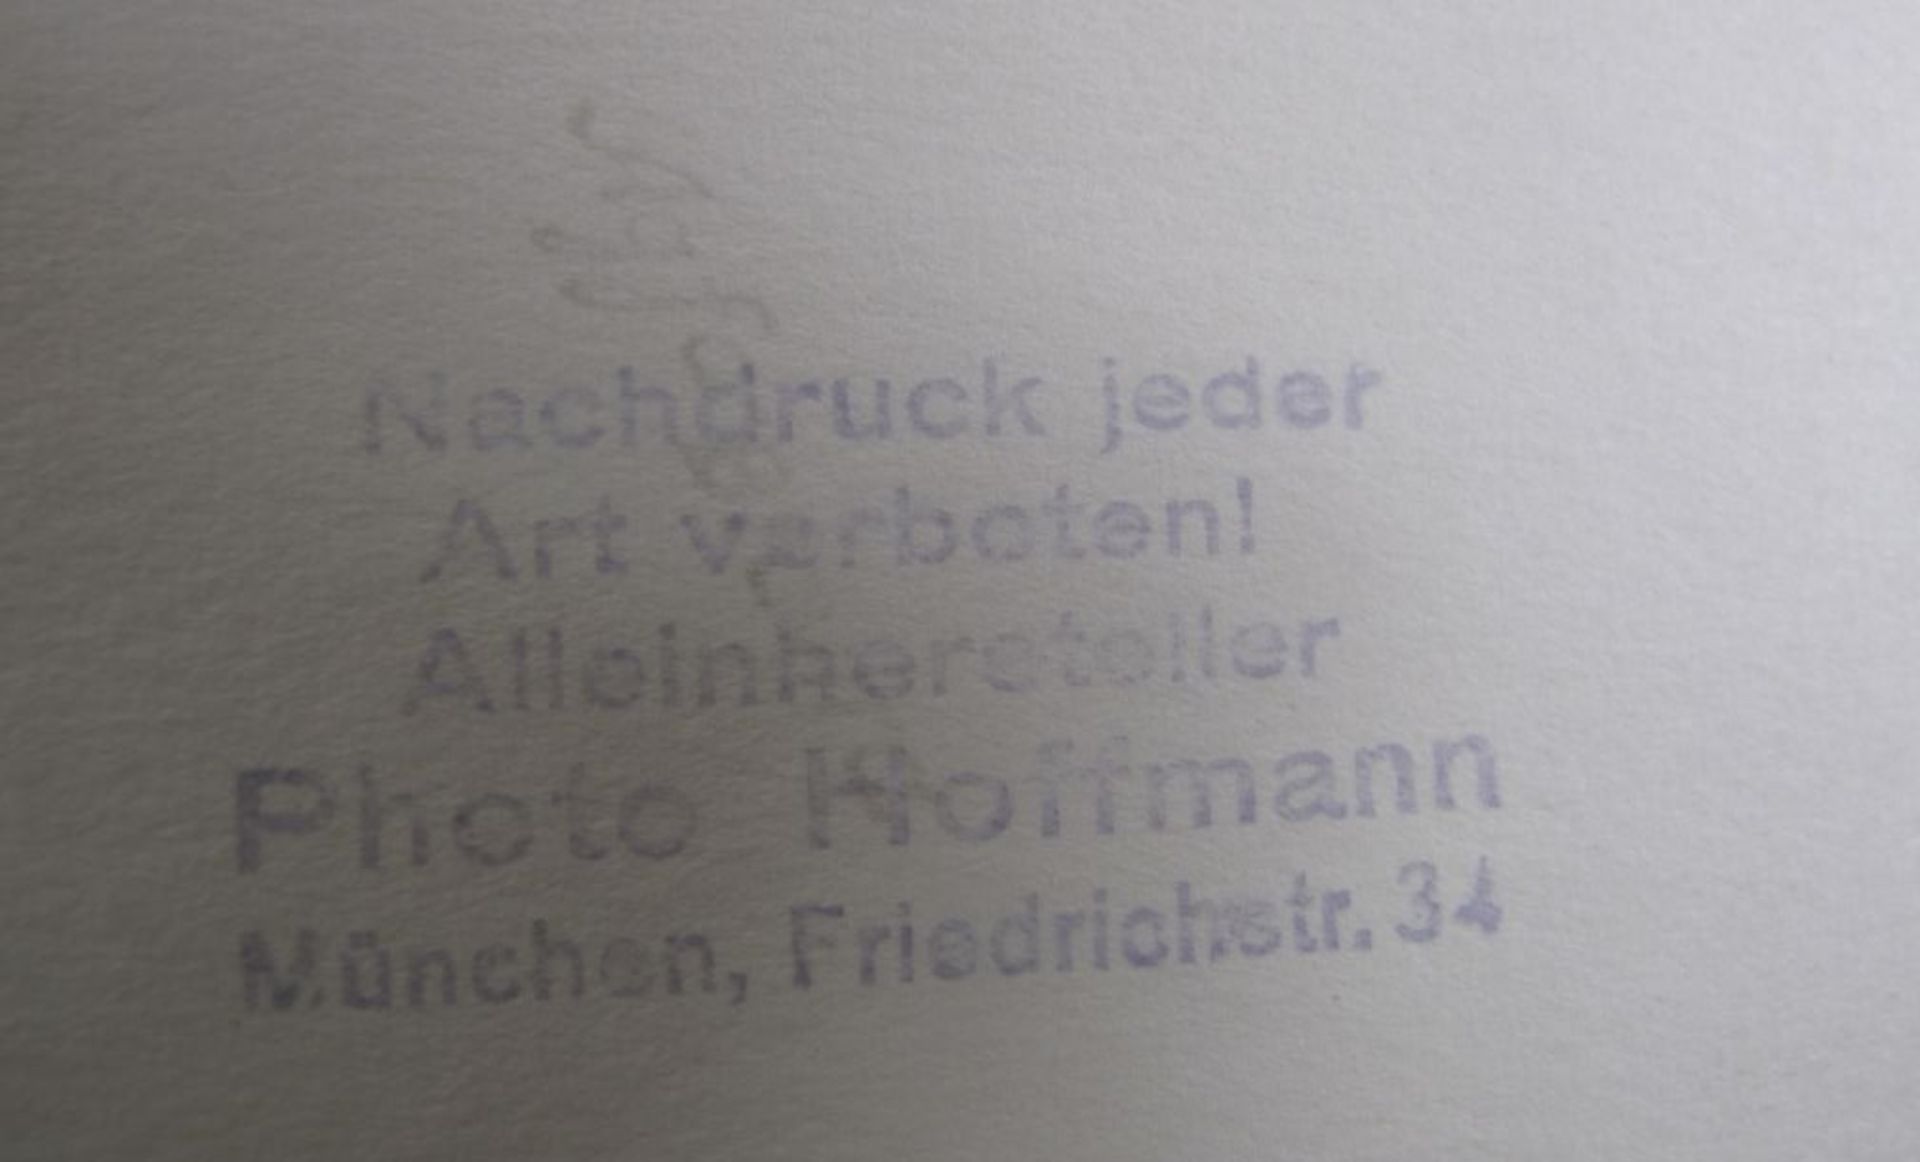 4x Fotografien sowie 2x Drucke "Adolf Hitler", verso Stempel "Photo Hoffmann, München", Größte 30 - Bild 2 aus 3